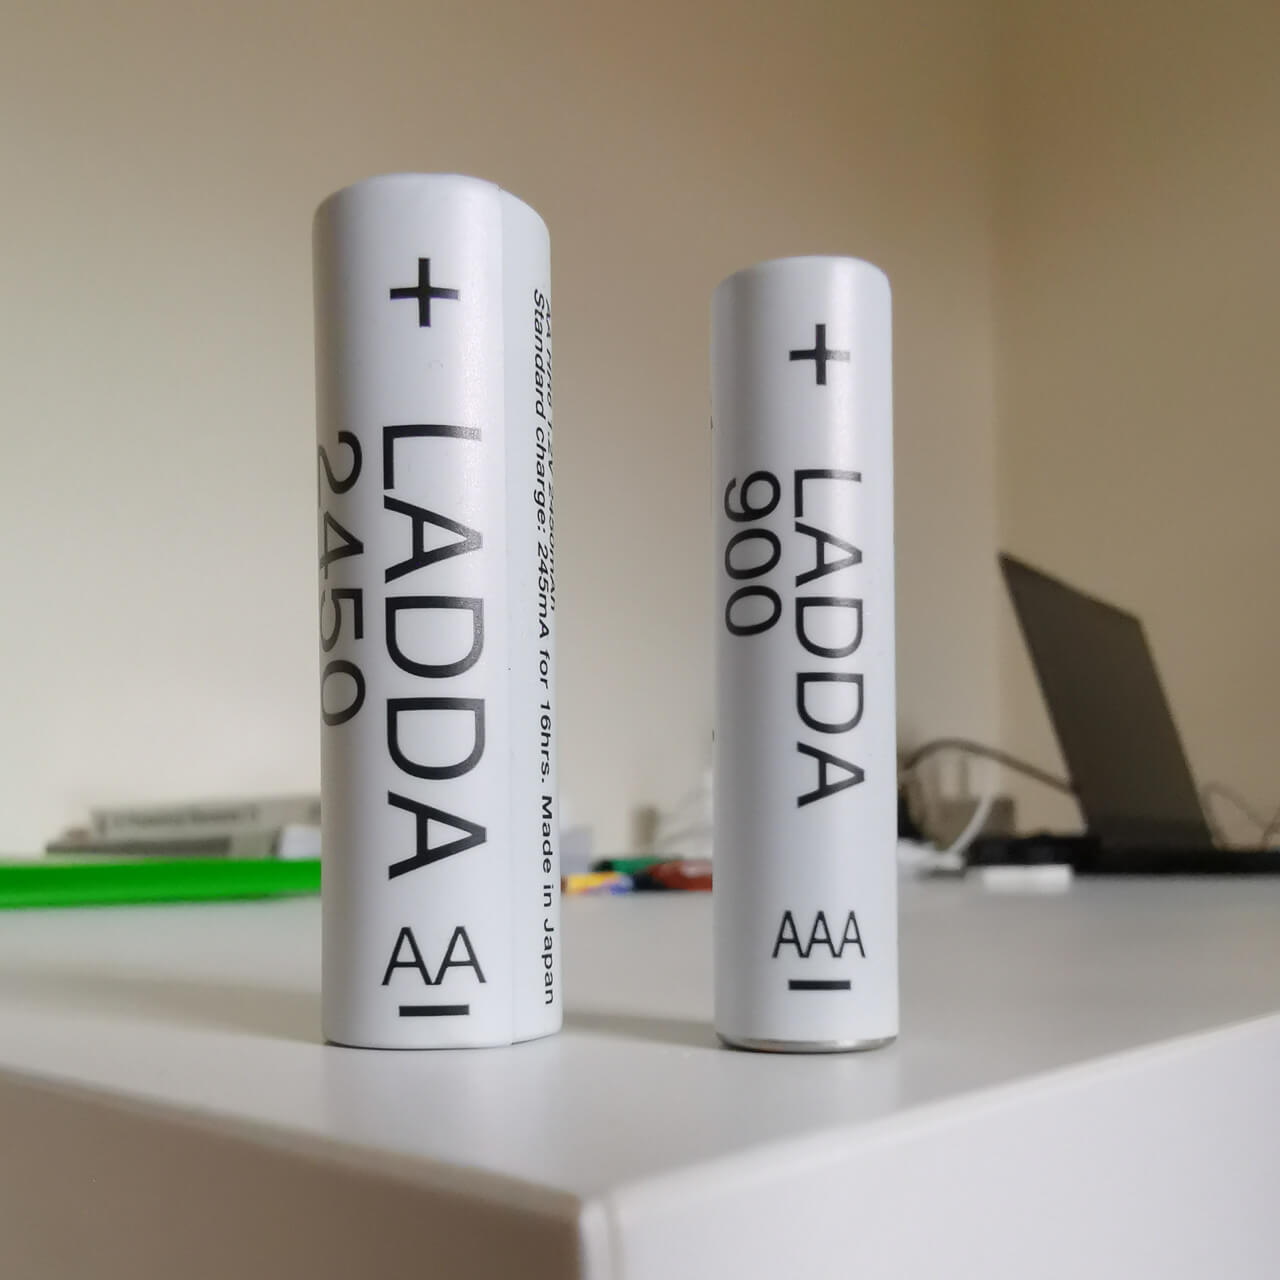 Ikea Ladda AAA and AA Batteries